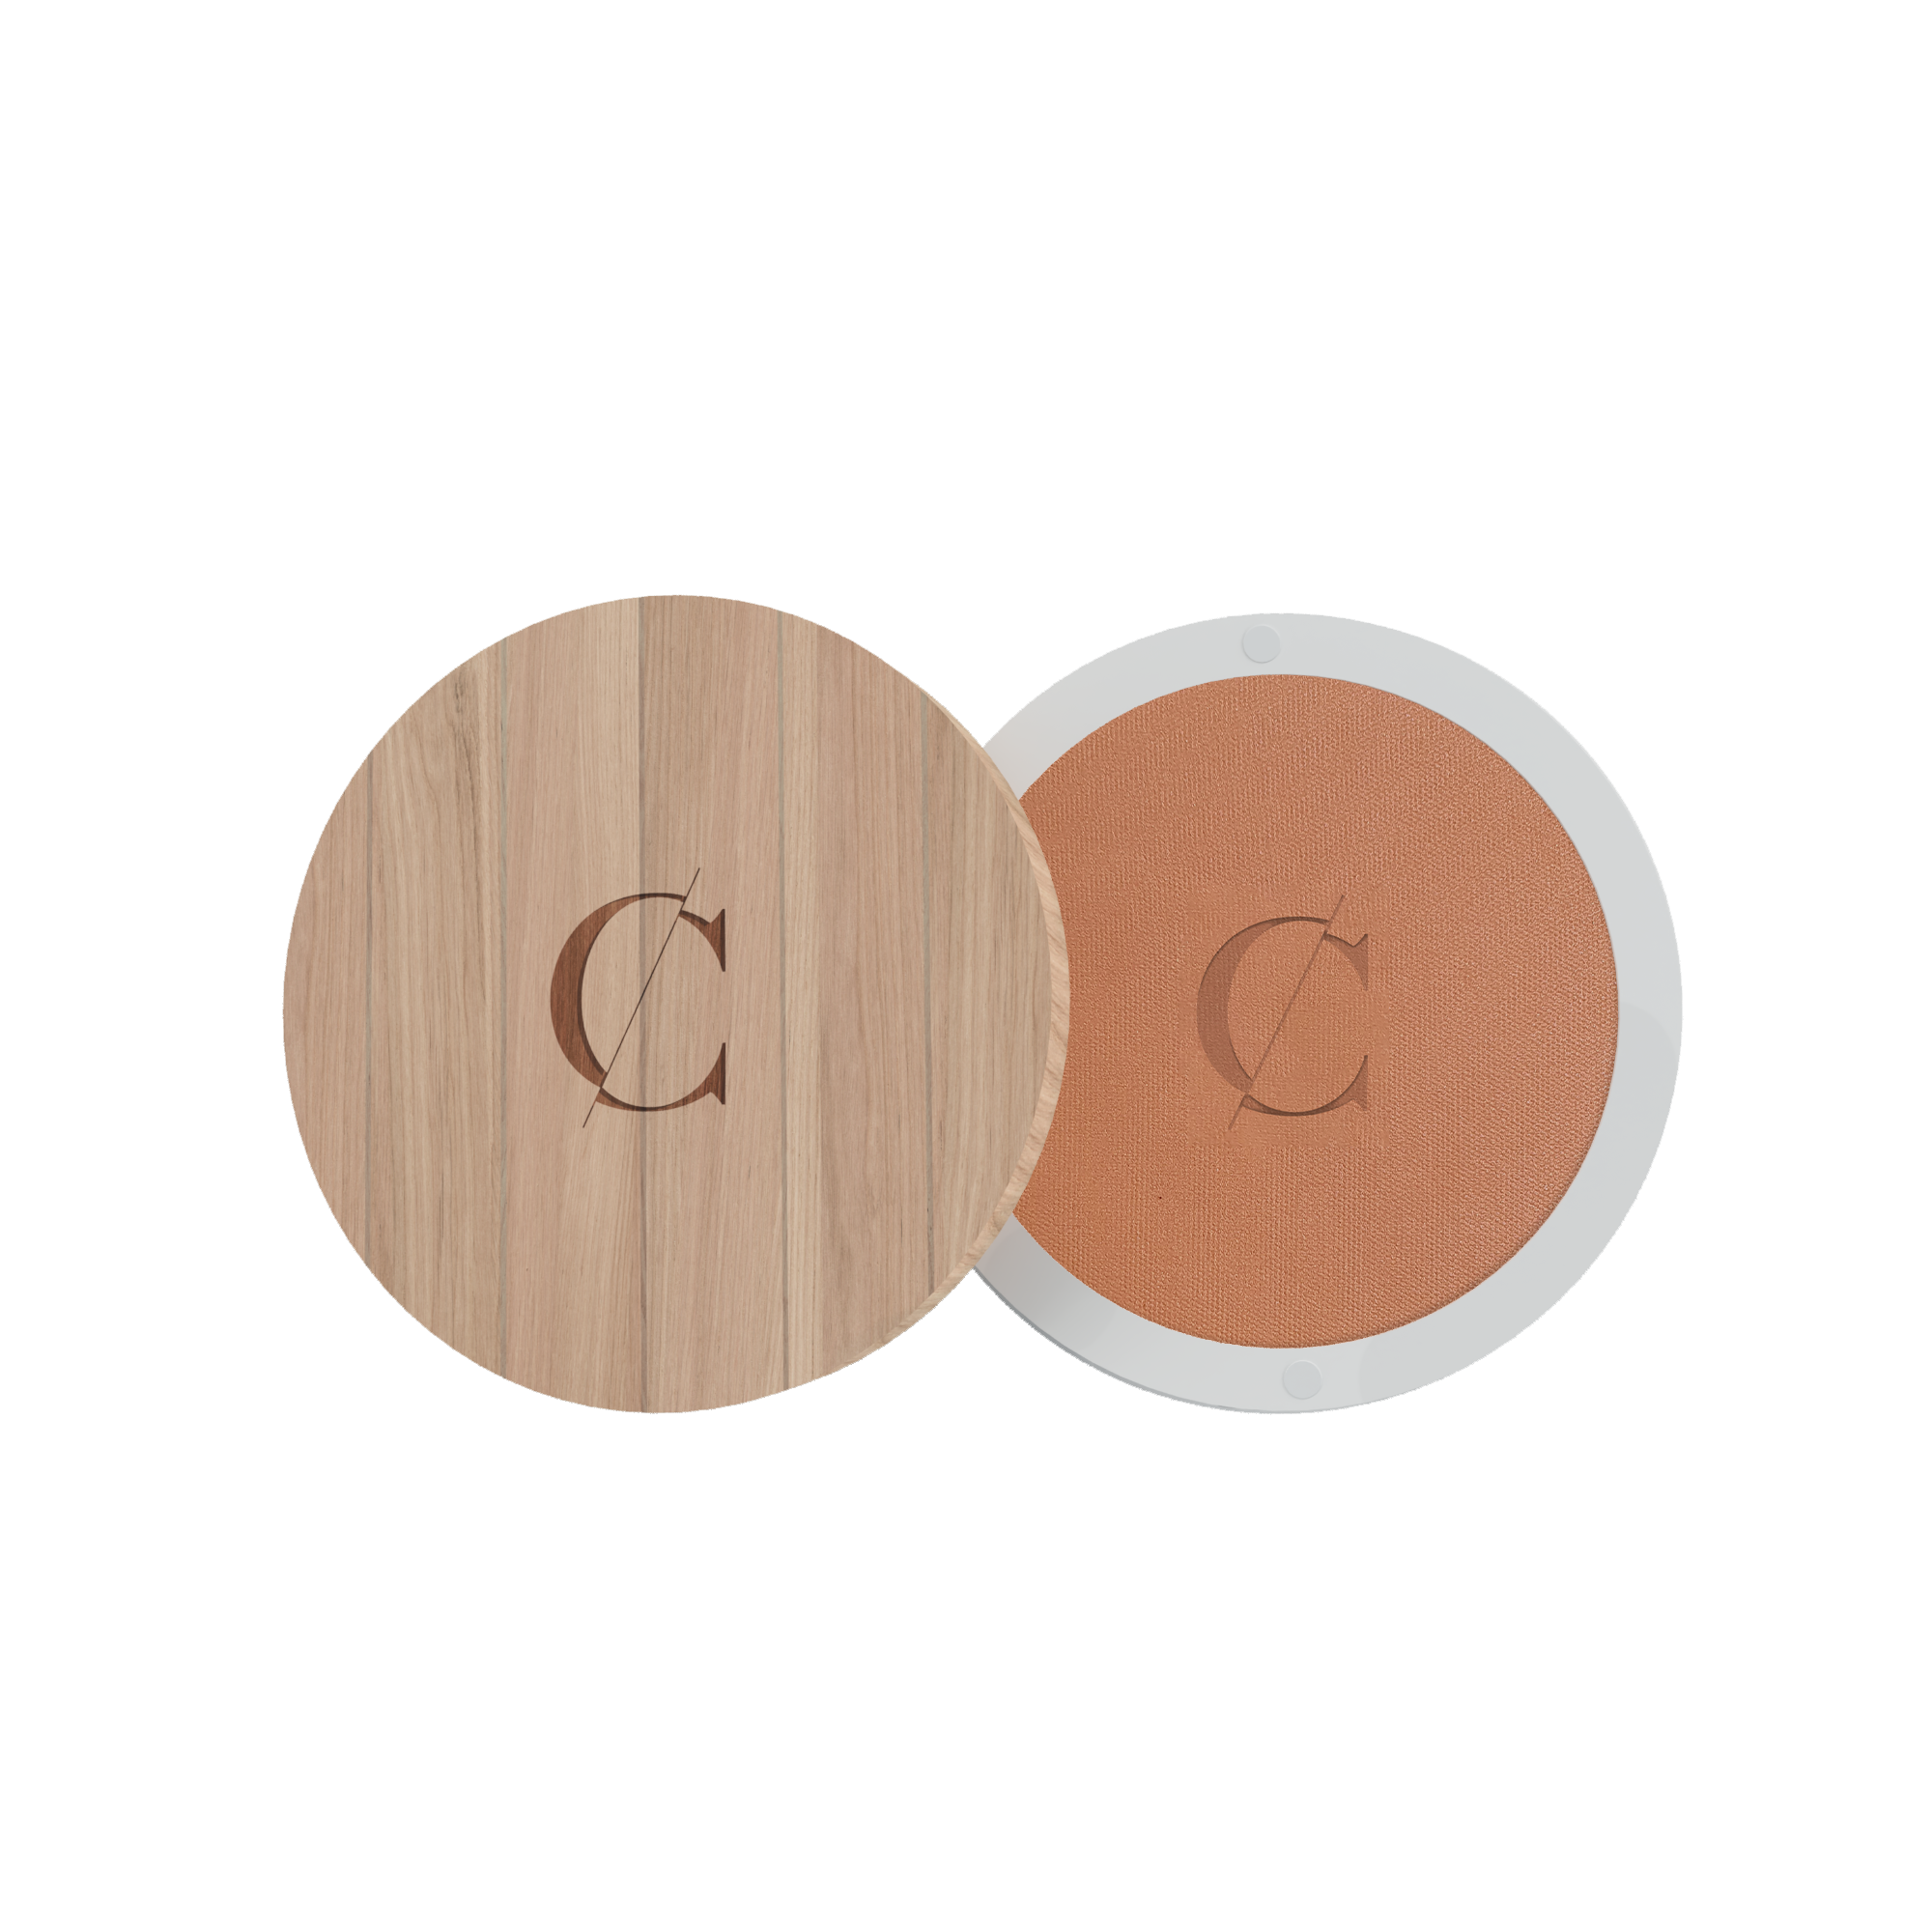 De natuurlijke en biologische huidteinten van Couleur Caramel zijn gemaakt van gemicroniseerd poeder.